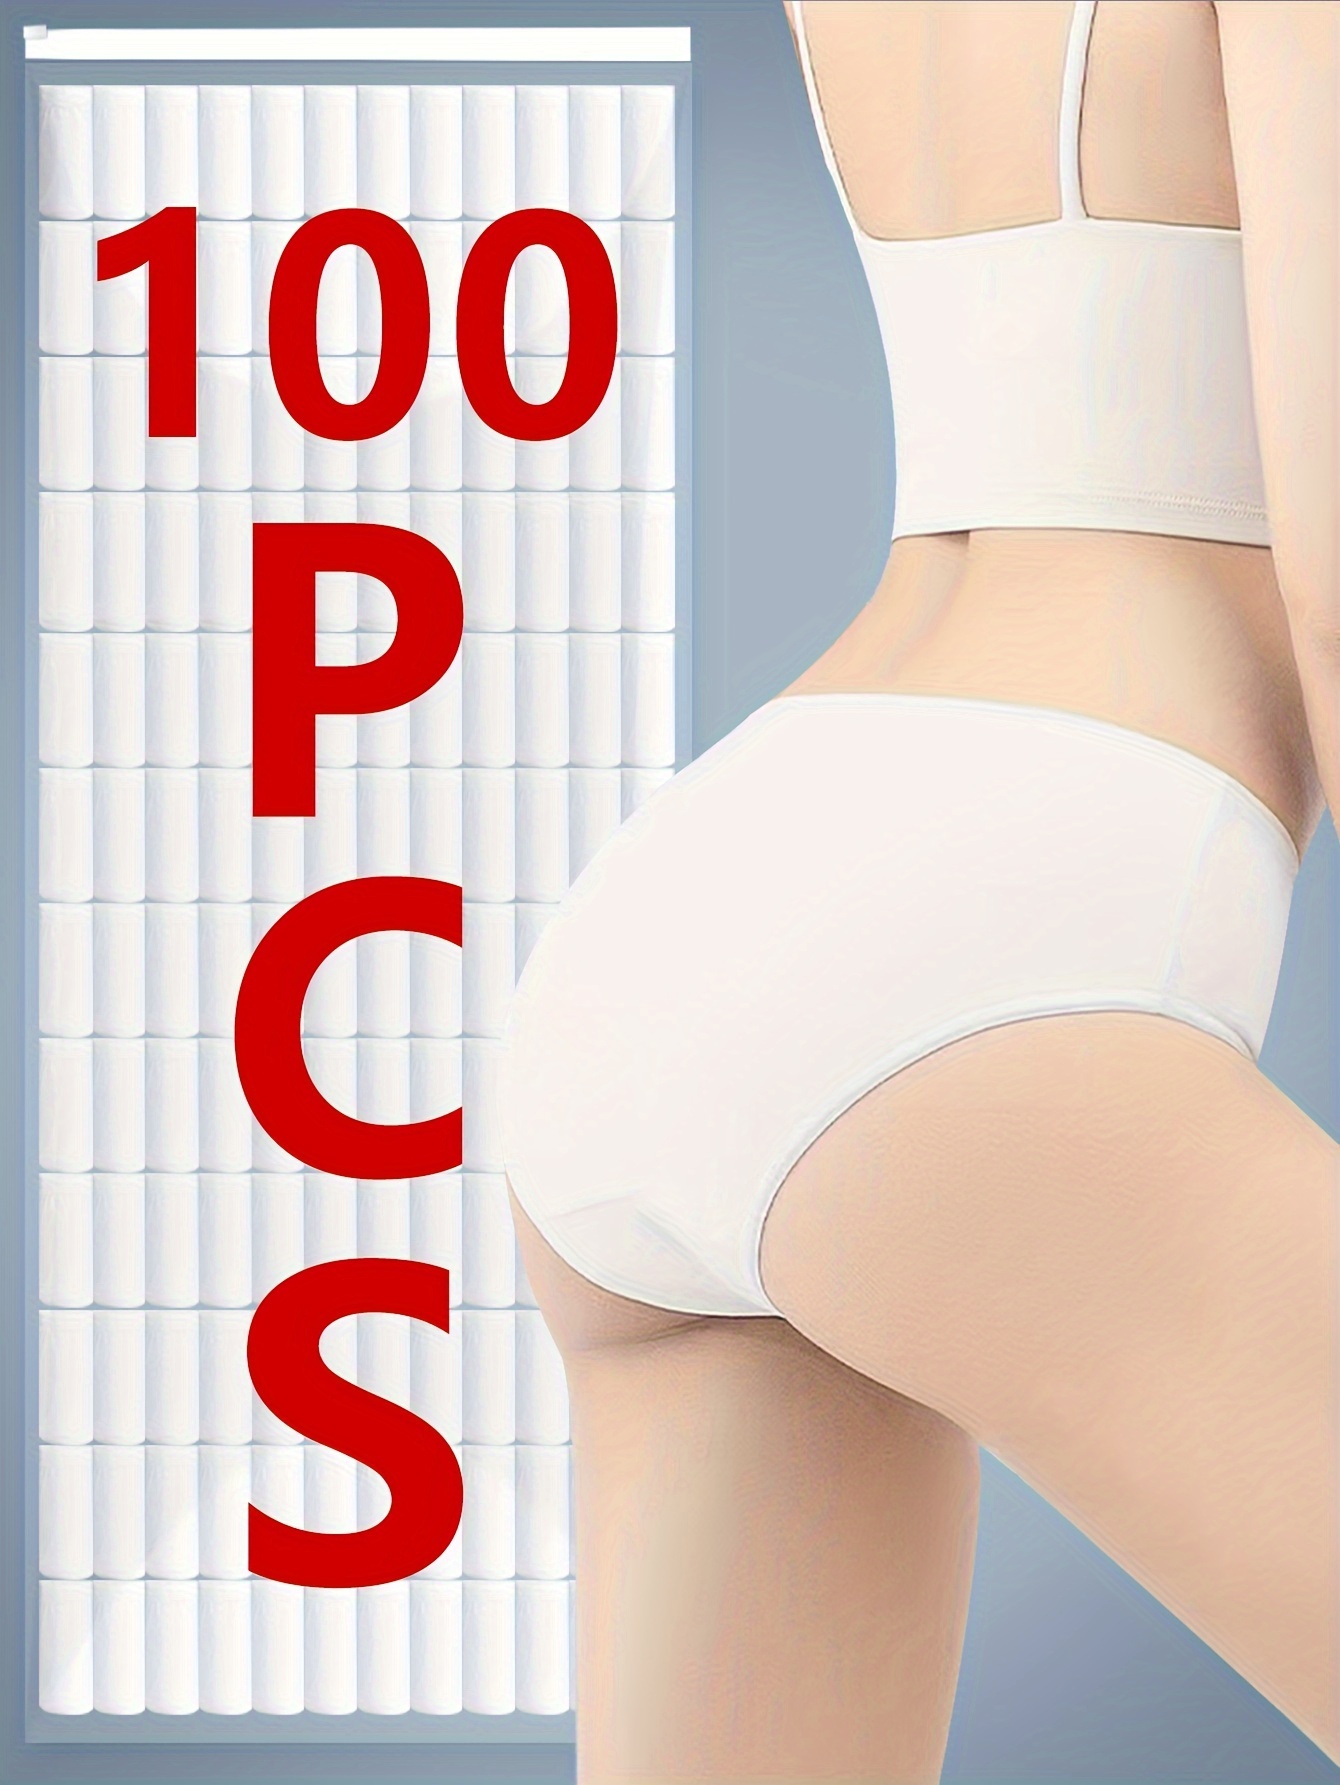 10pcs Women's Disposable Pure Cotton Underwear Travel Panties